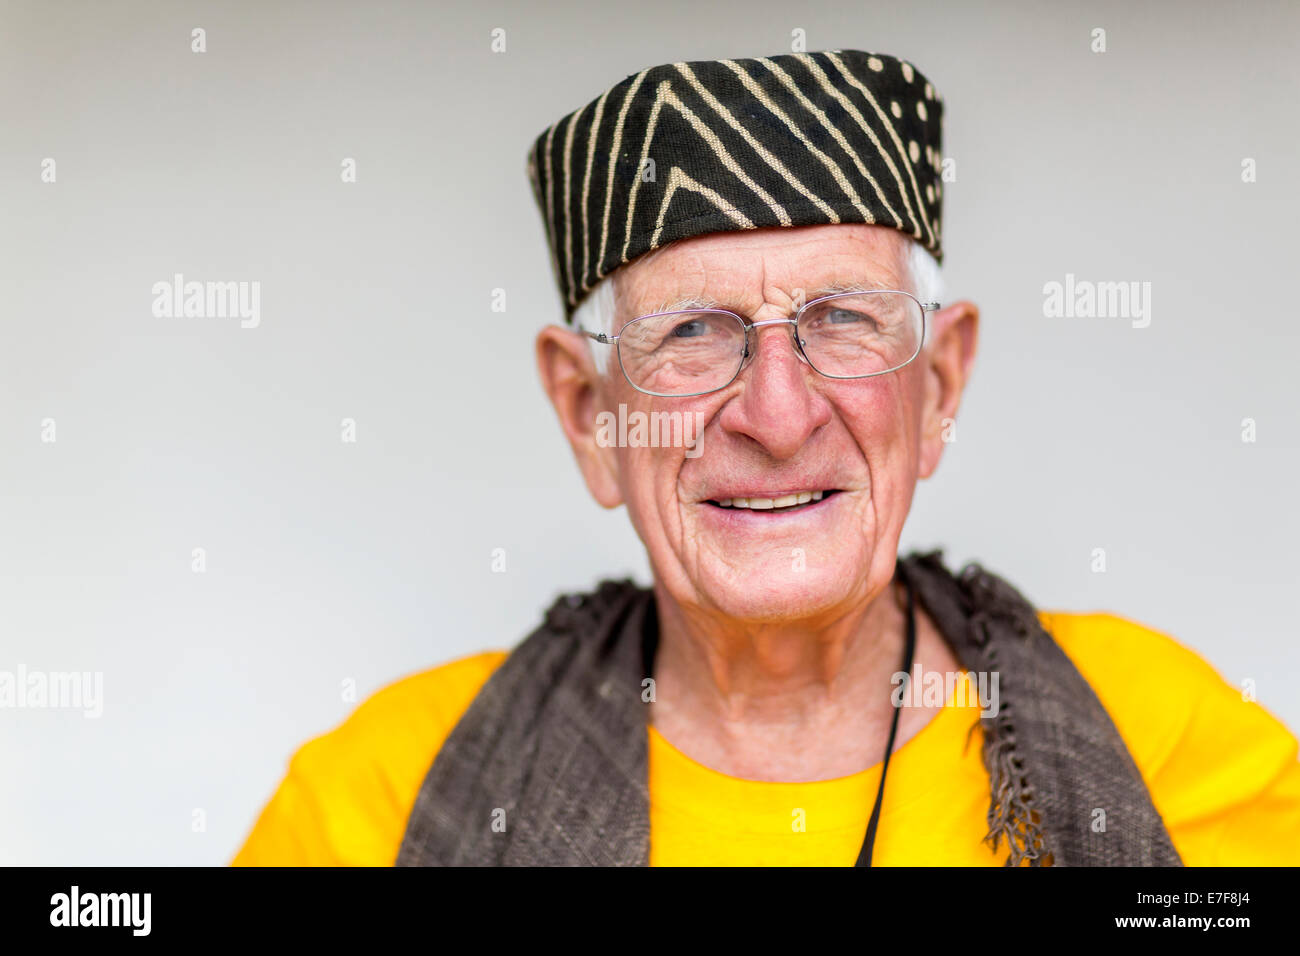 Vecchio uomo caucasico indossando striped hat Foto Stock